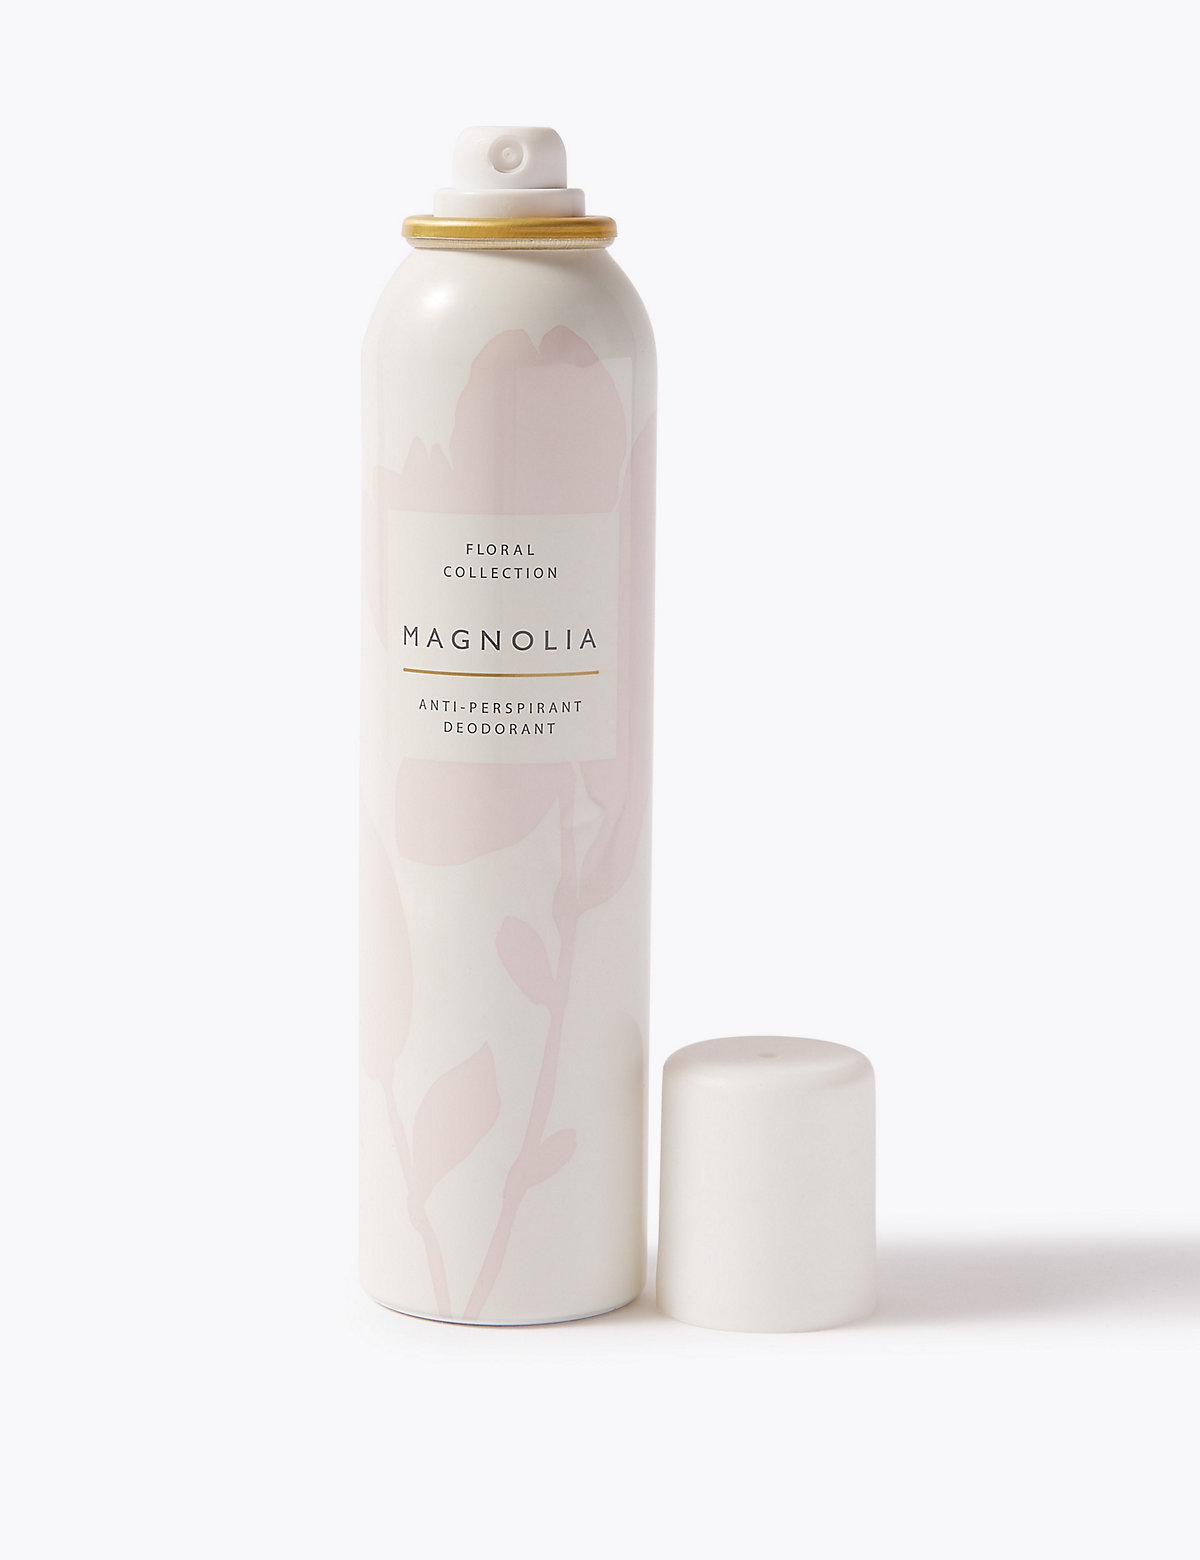 Magnolia Anti-Perspirant Deodorant